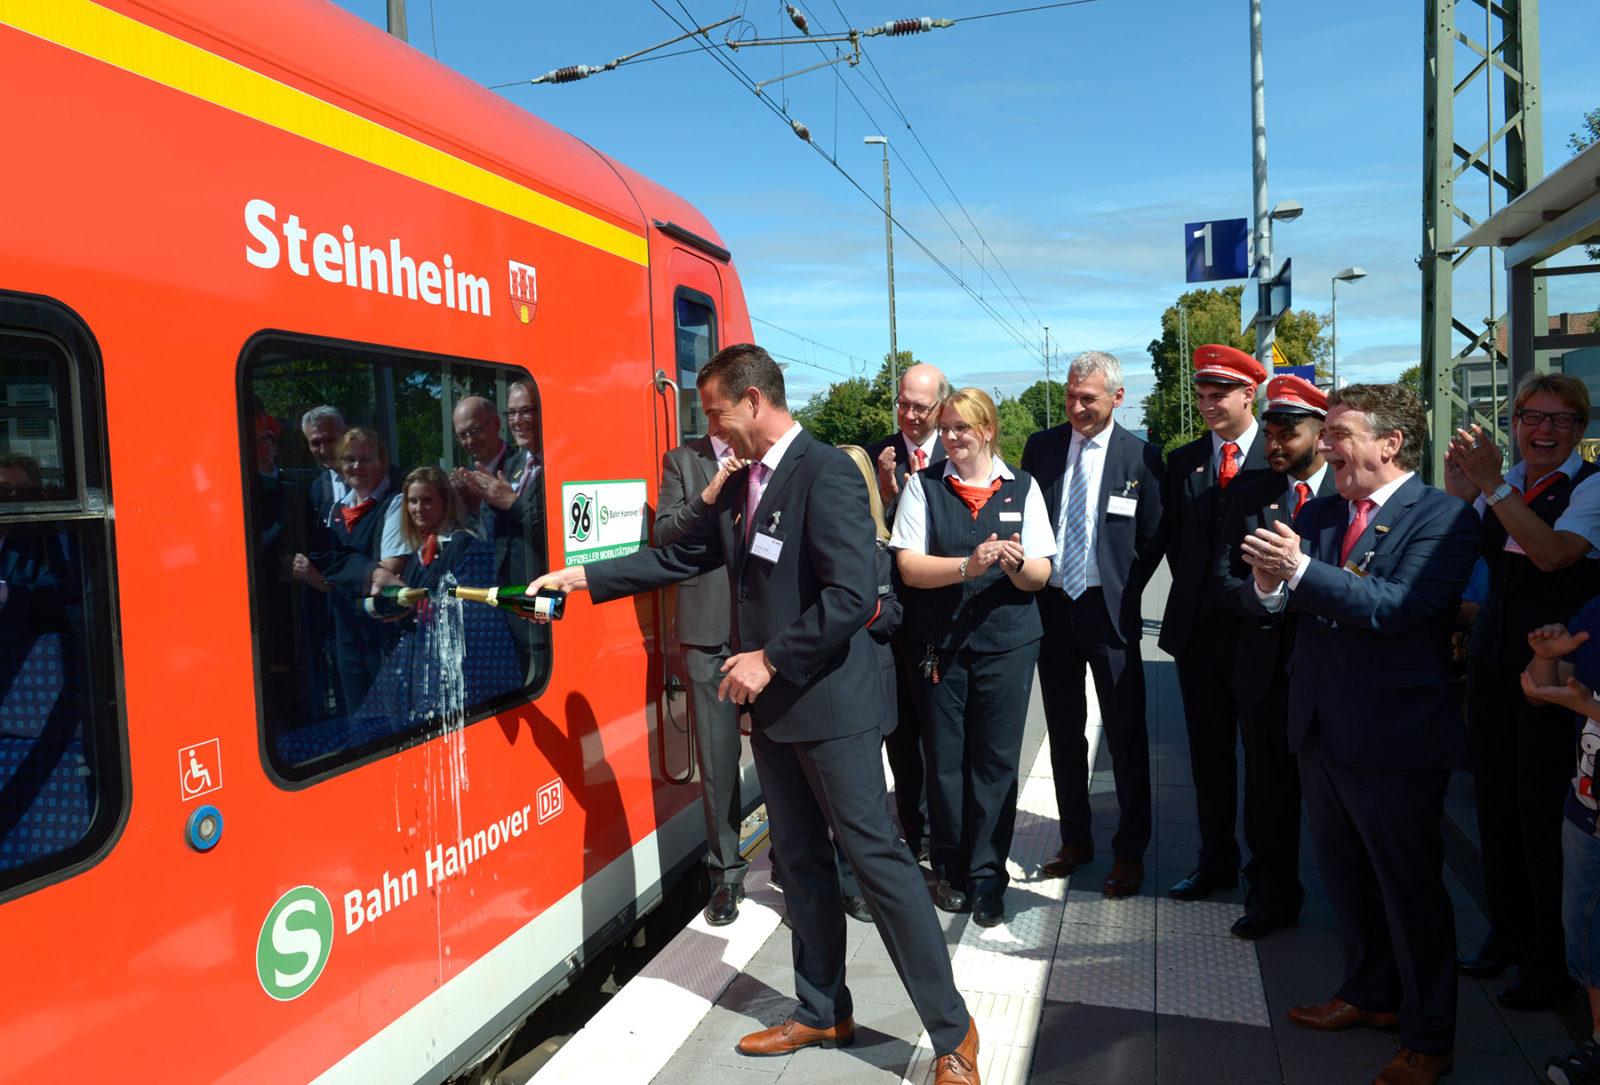 Bahnhof des Jahres 2016: Feier in Steinheim (Westfalen)